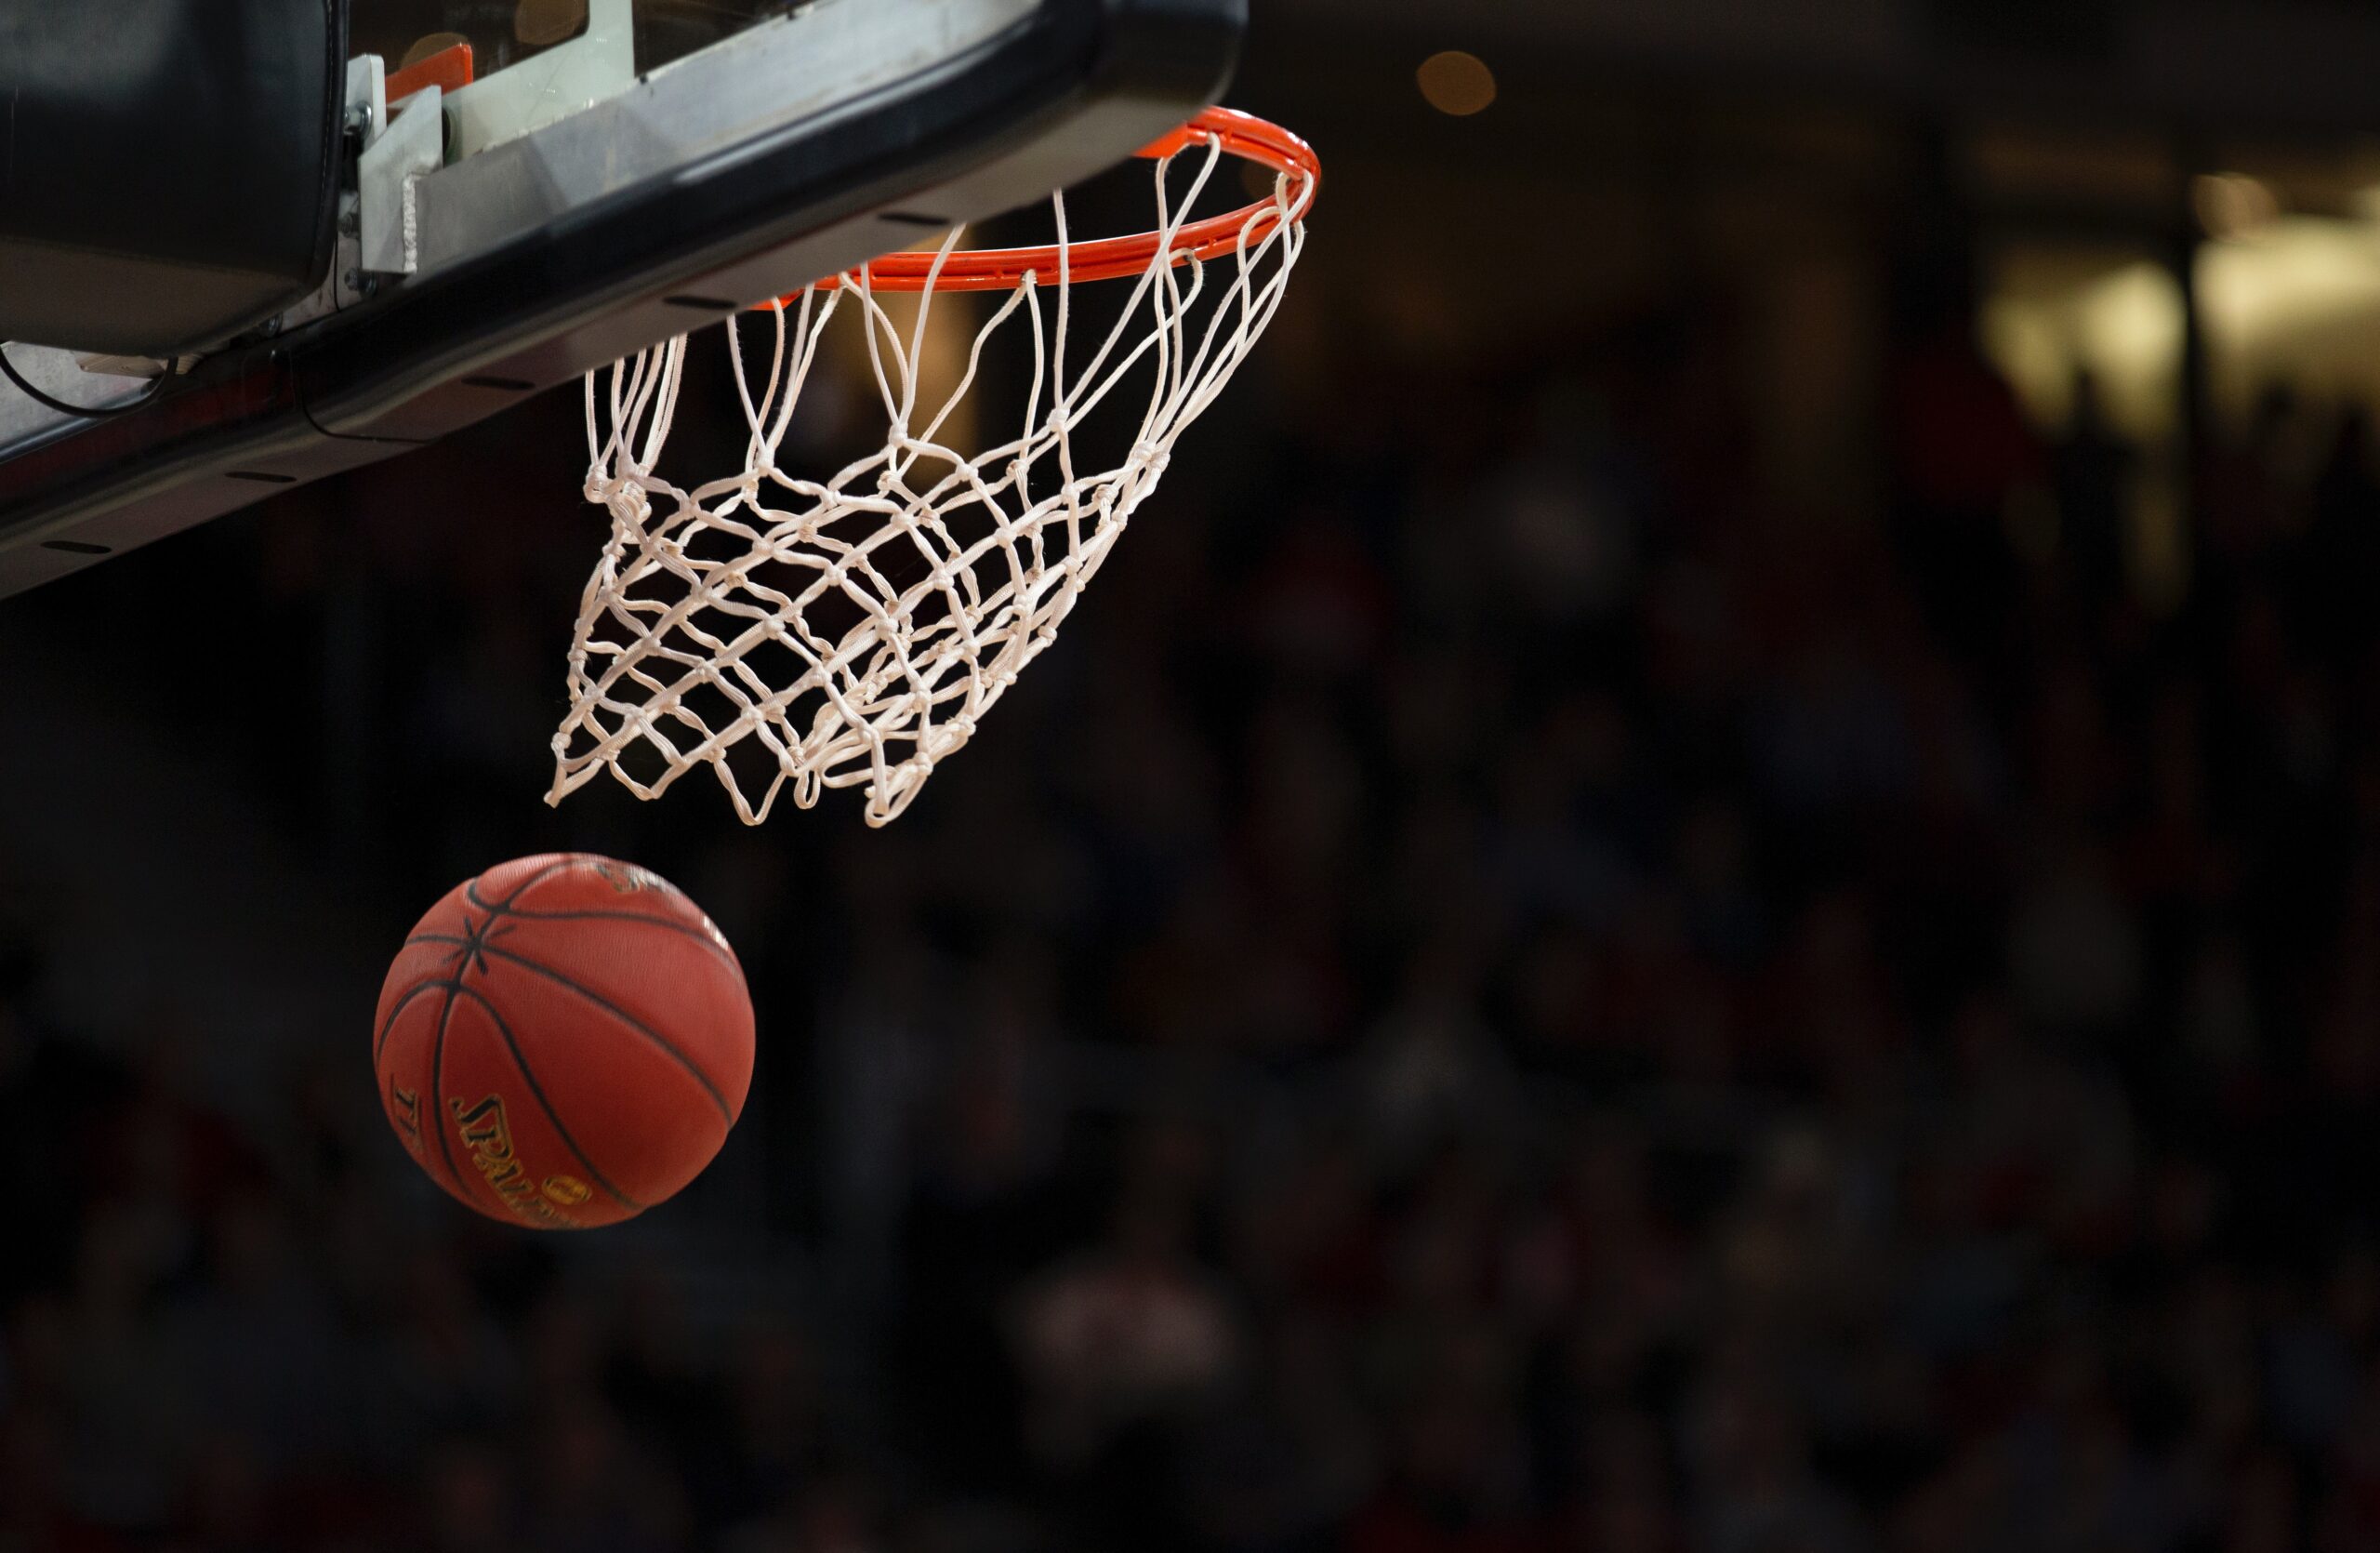 Muitos jogadores são conhecidos por marcar duplo-duplos na NBA. Você sabe o que é duplo-duplo no basquete? Descubra o significado do termo.